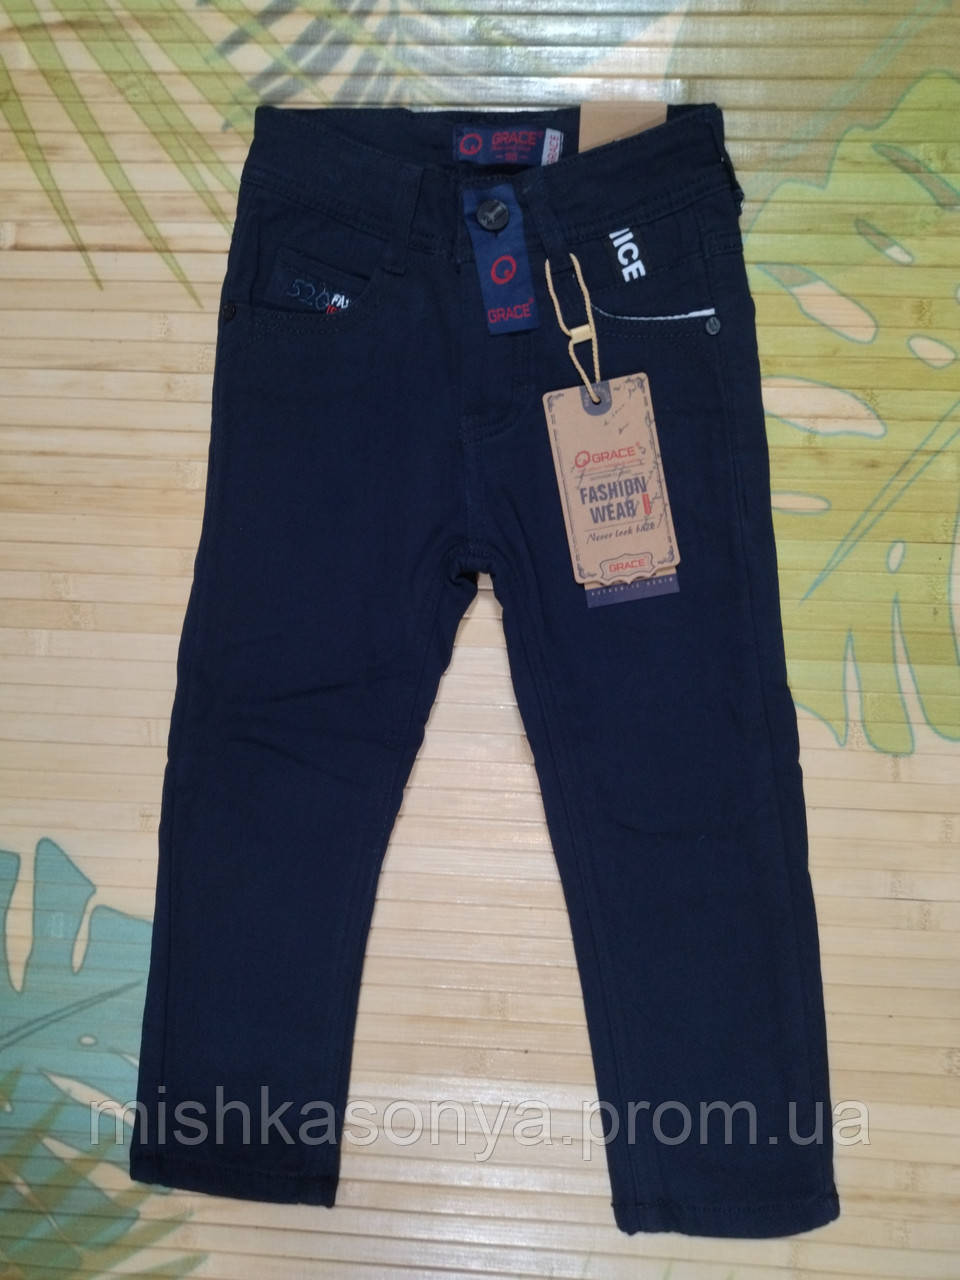 

Утепленные джинсы-брюки на флисе для мальчика "82652" р. 98, 110, 116, 122